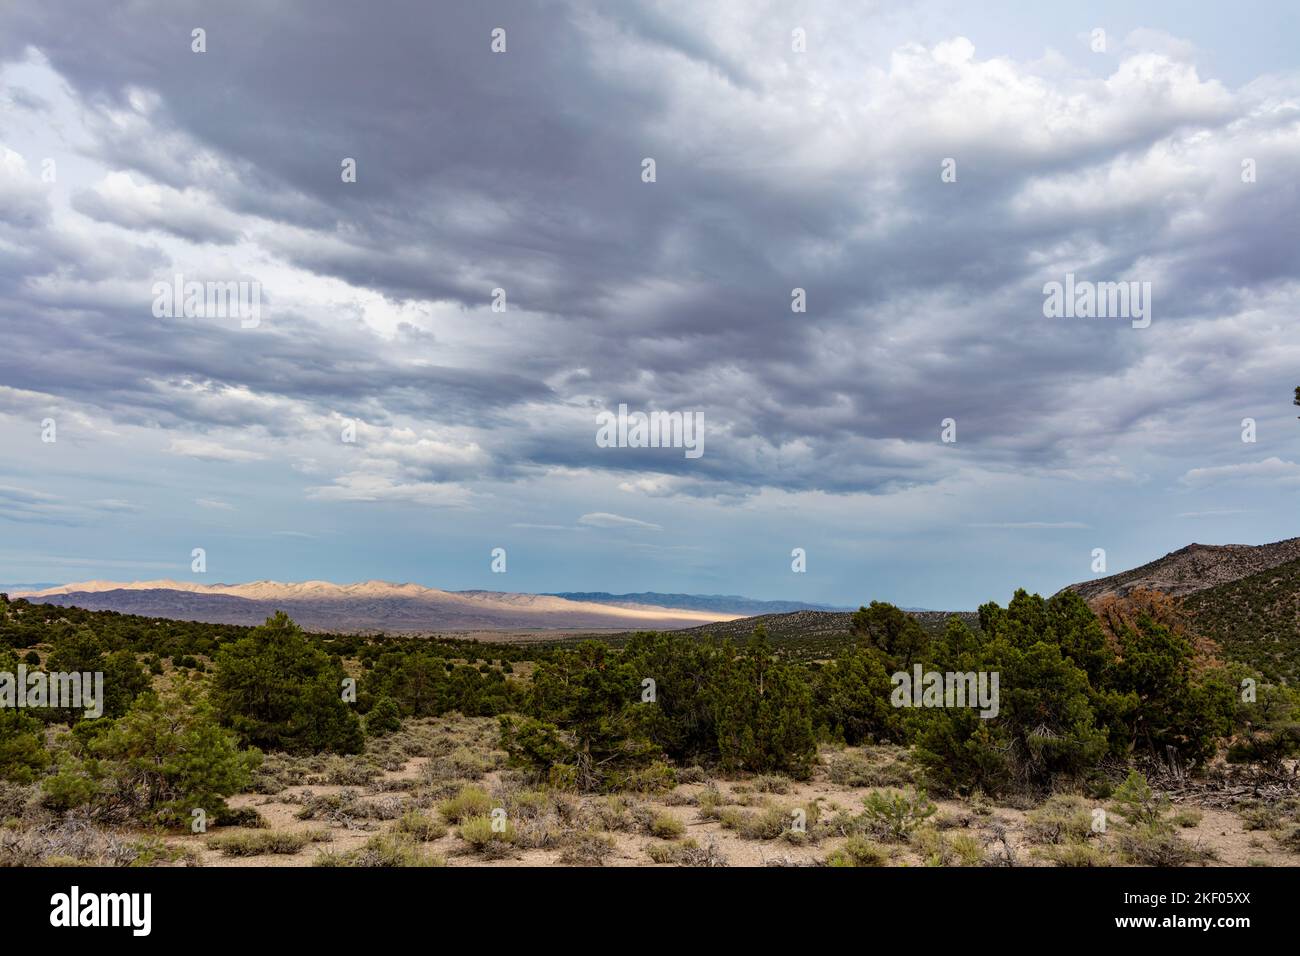 Las nubes de lluvia se reúnen en una noche de verano sobre el desierto de la Gran Cuenca y los matorrales al sur de Baker, Nevada cerca de la frontera de Utah. Foto de stock